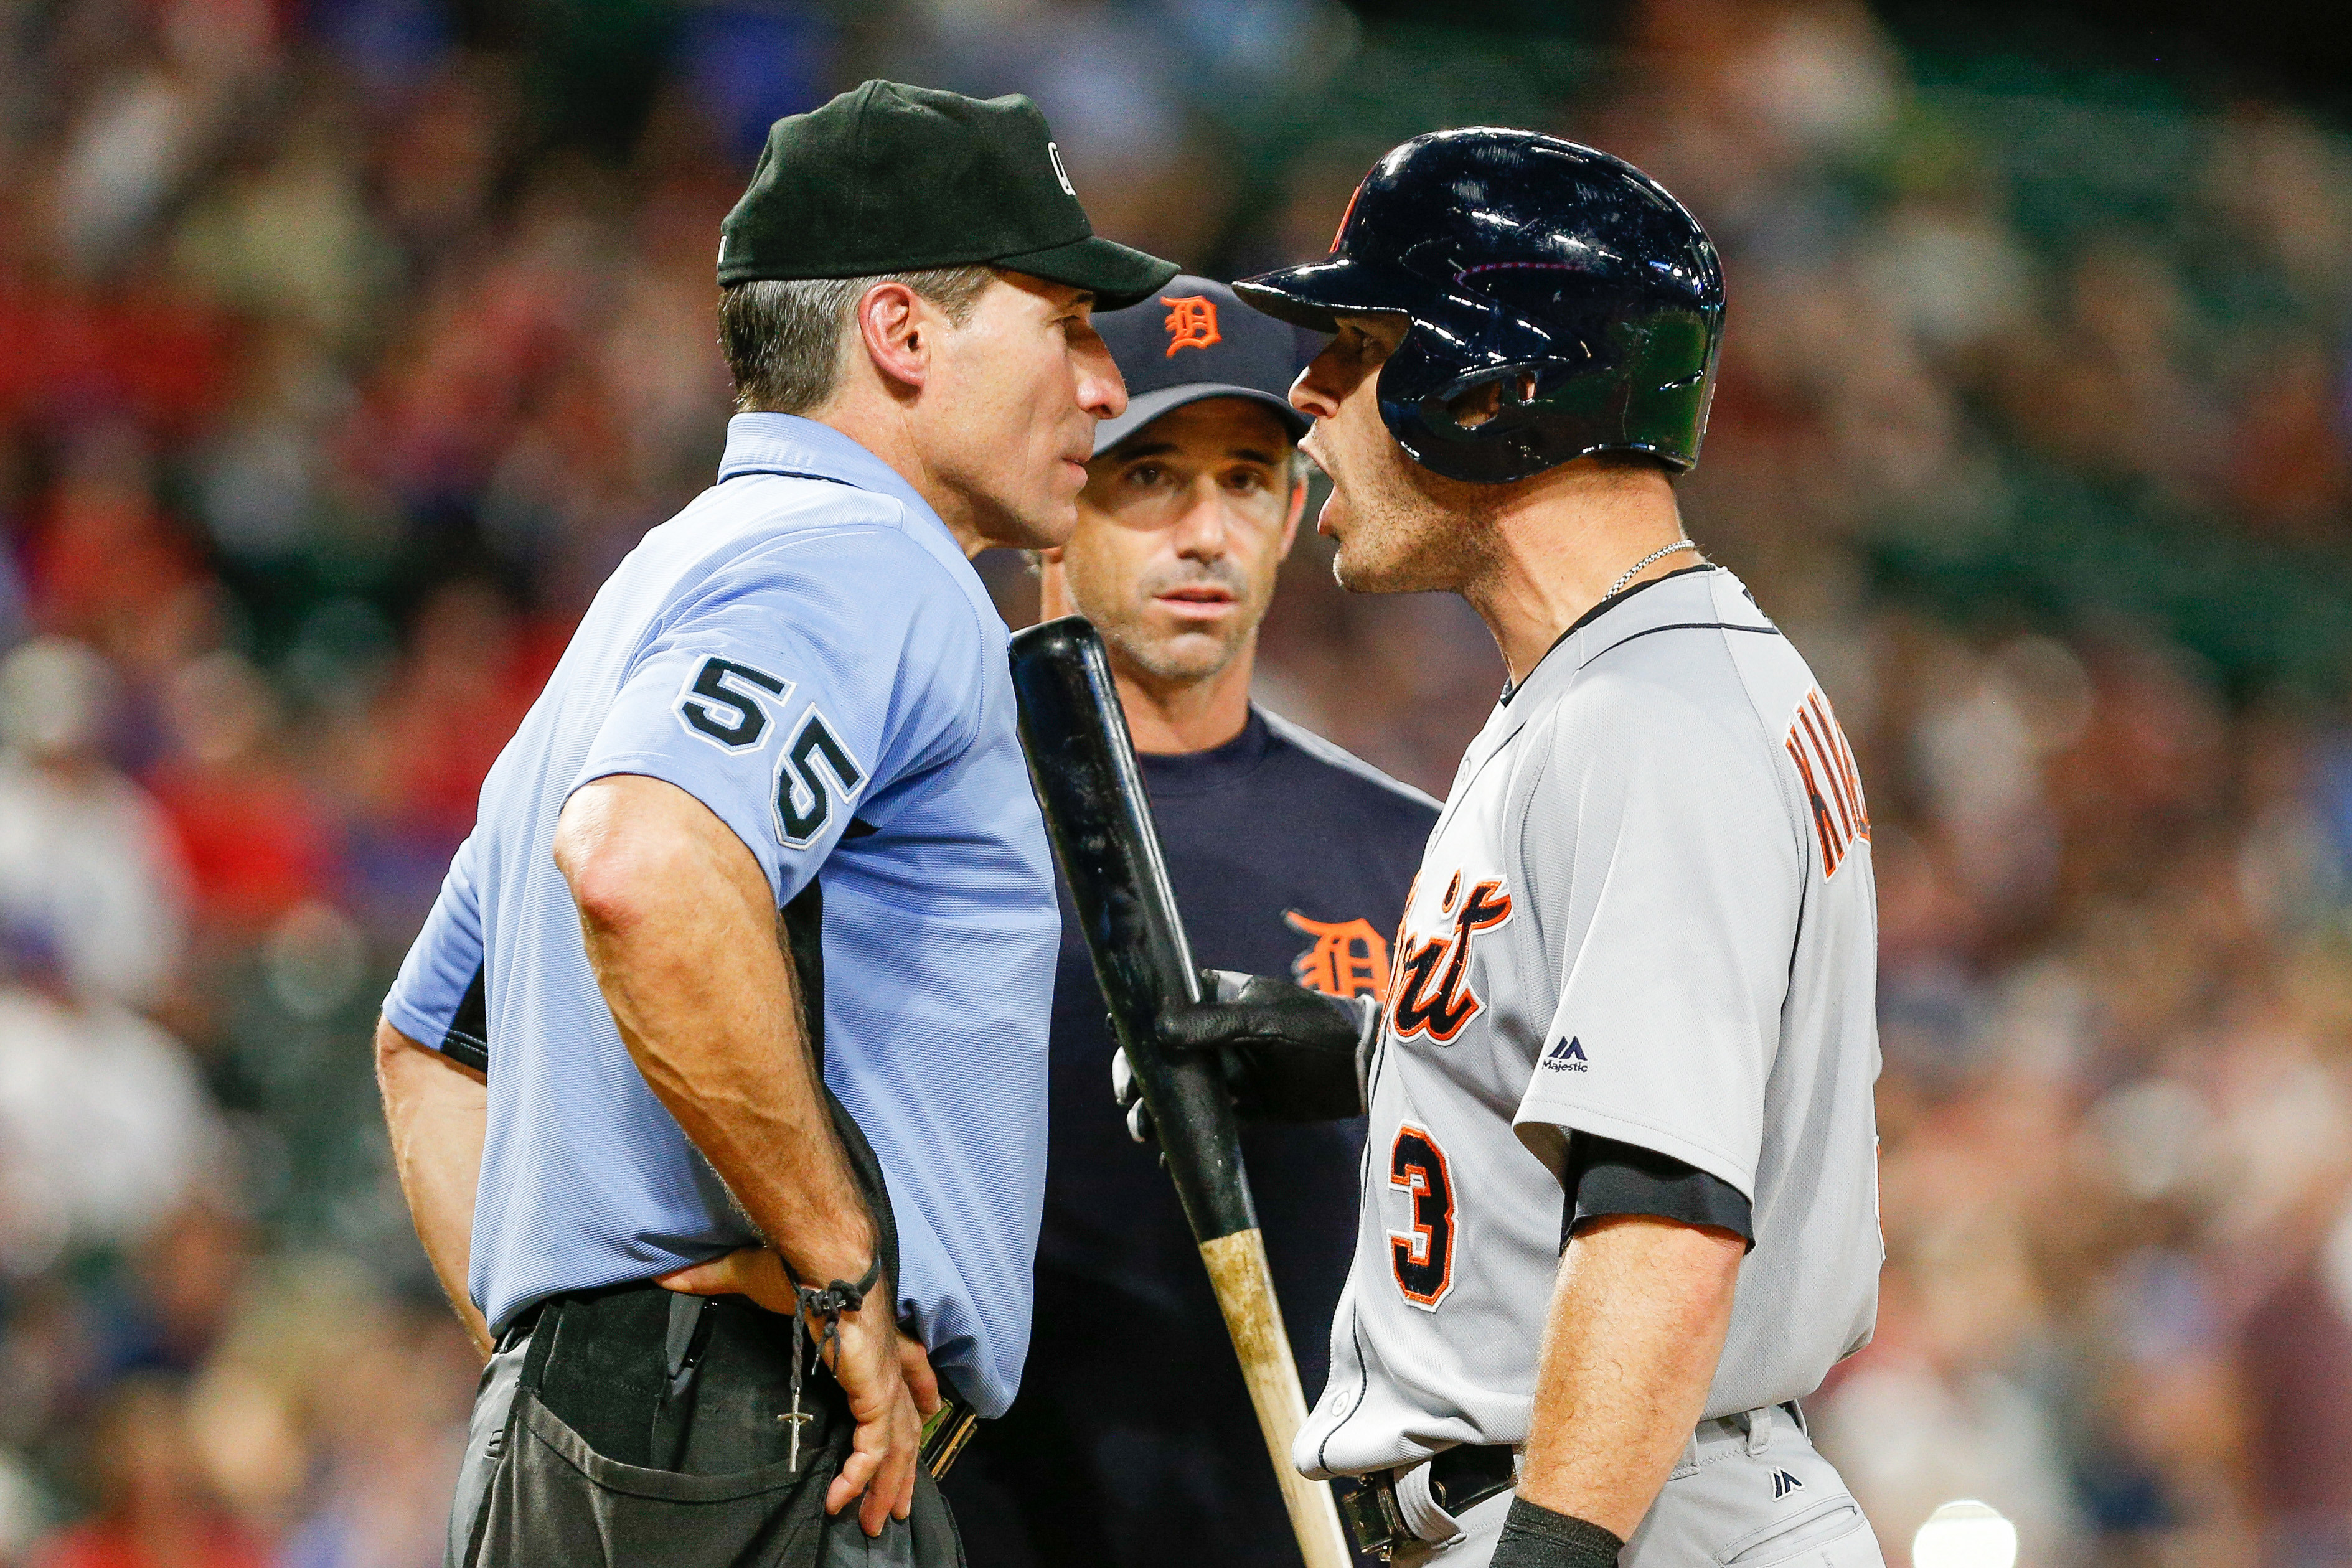 Embattled umpire Ángel Hernández alleges MLB altered evaluations